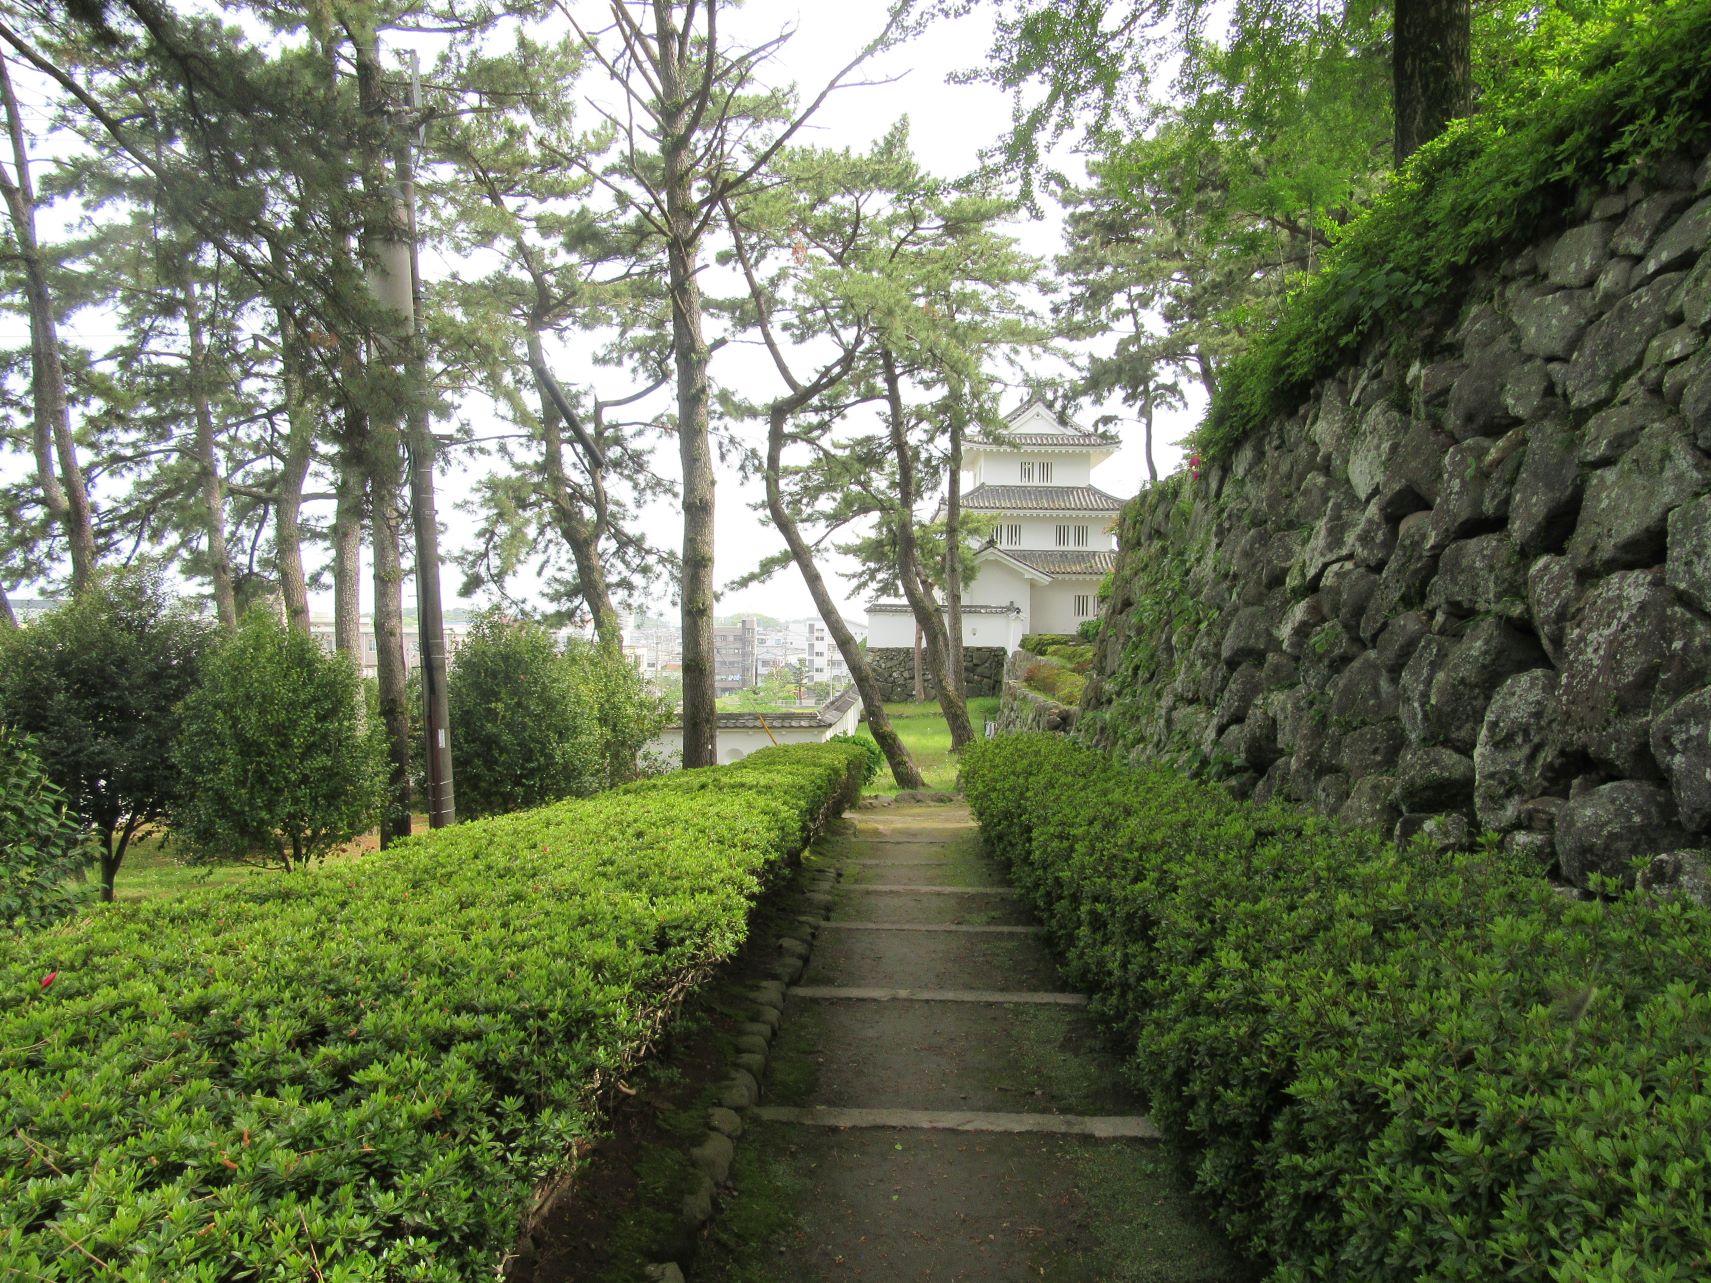 長崎県島原市の島原城で撮影した、小径です。石垣と木々と、奥の建物のバランスが良いですね。